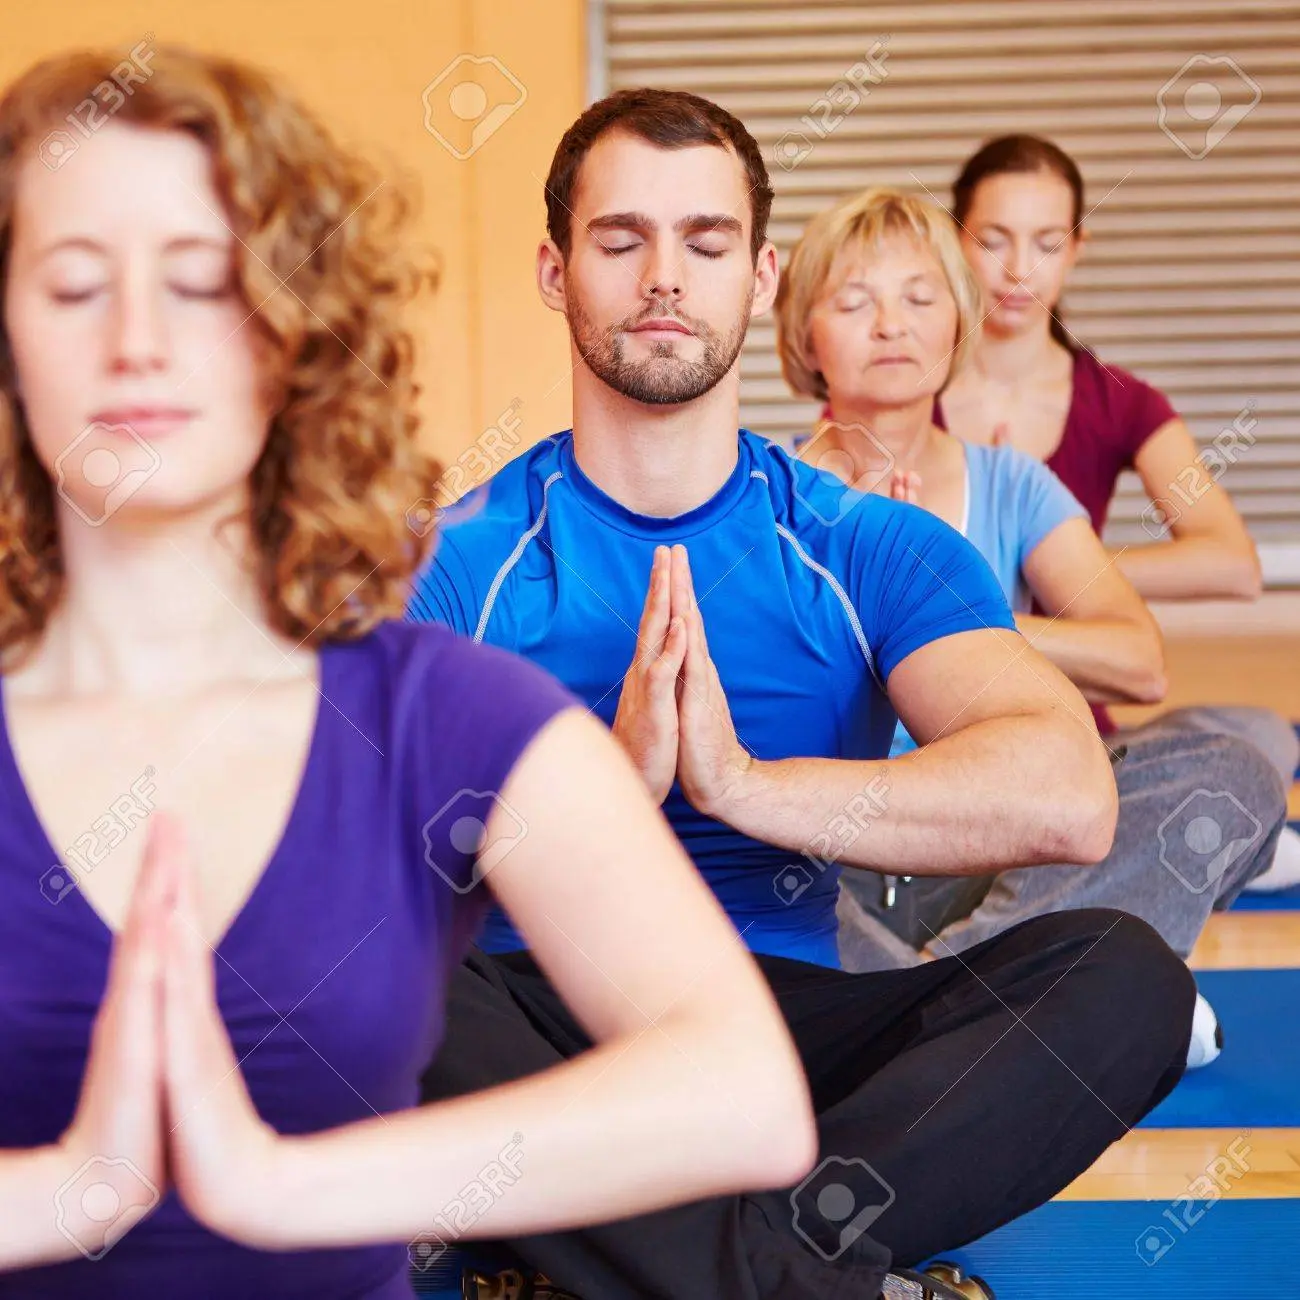 yoga mixto - Qué es yoga mixto